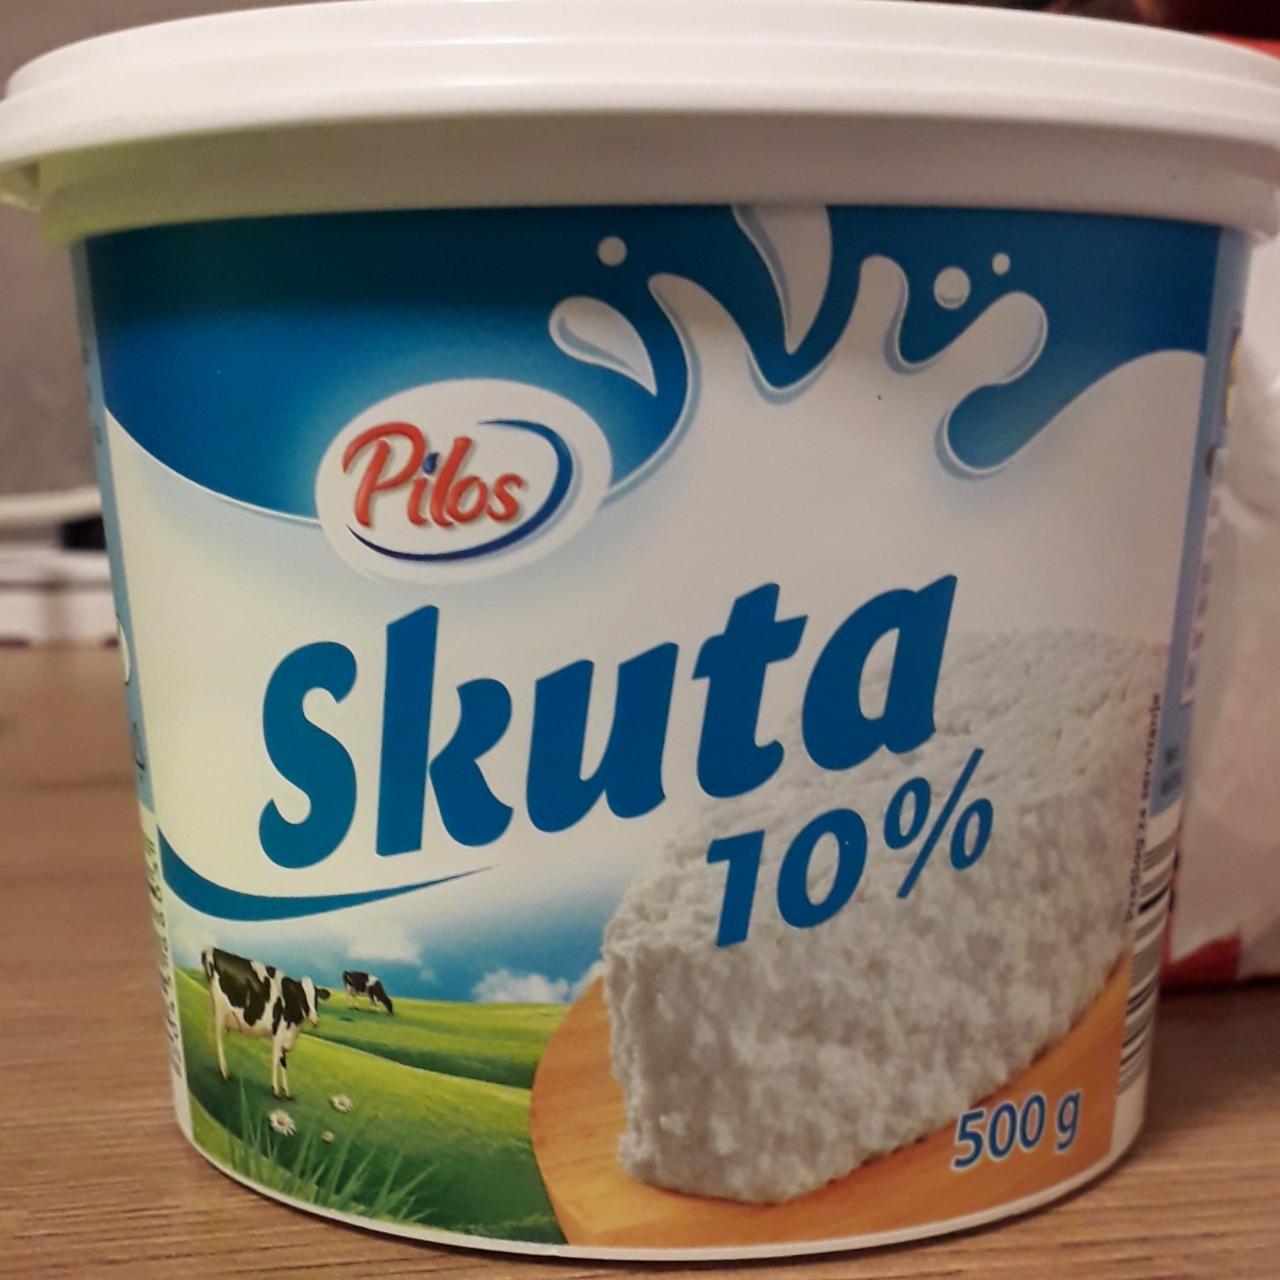 Fotografie - Skuta 10% Pilos